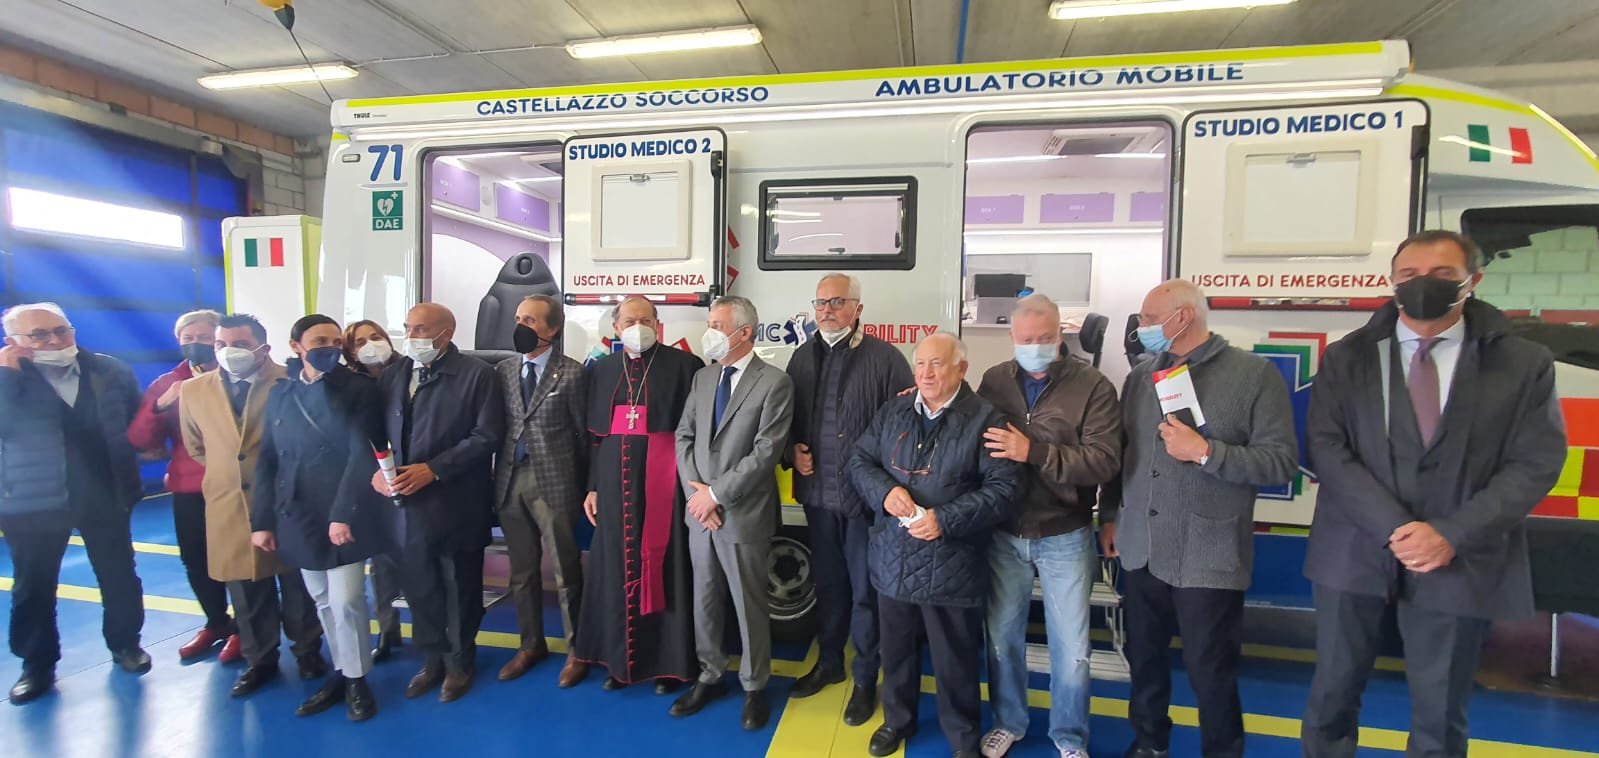 Castellazzo Soccorso: inaugurato il nuovo ambulatorio mobile